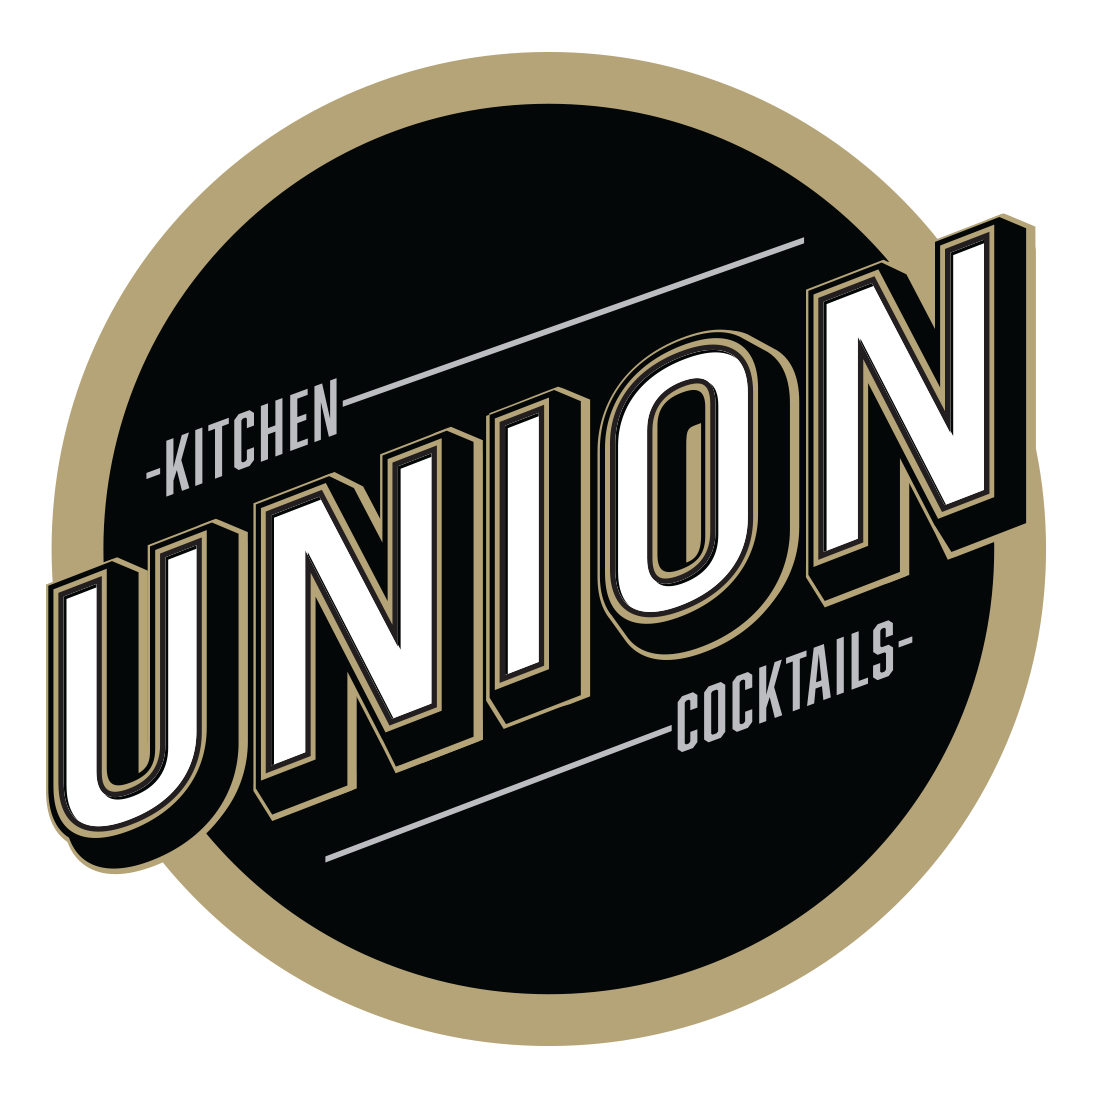 Union Kitchen + Cocktails